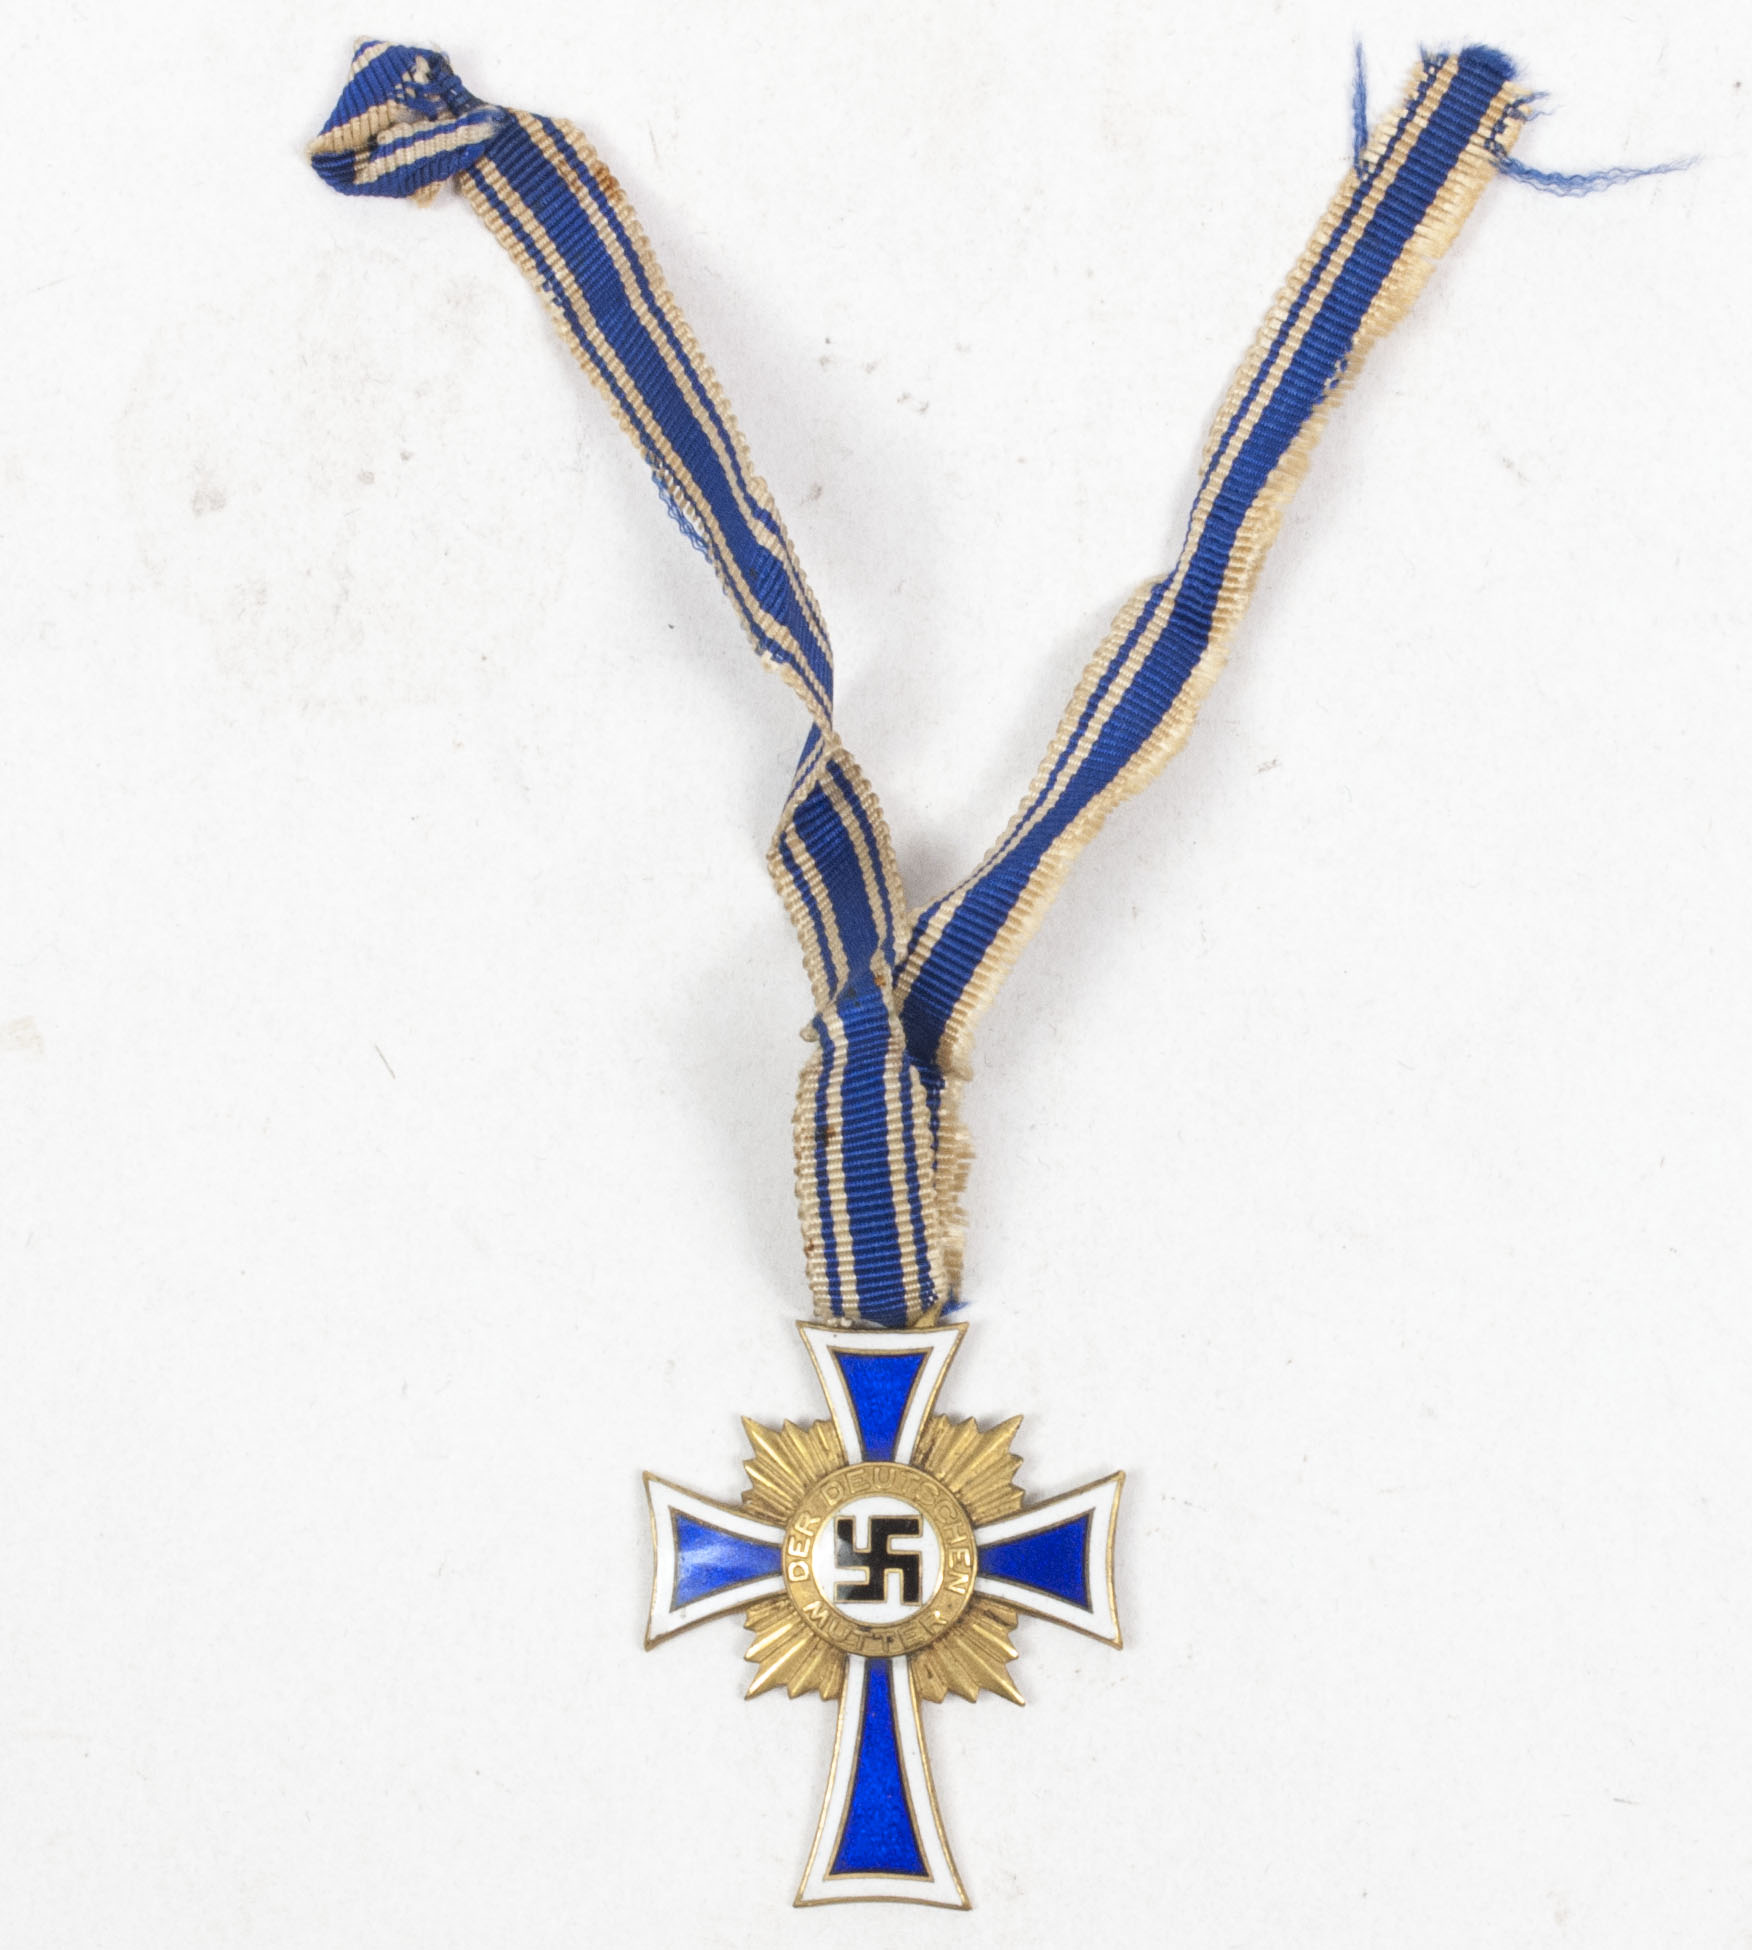 Mutterkreuz Motherscross gold medal